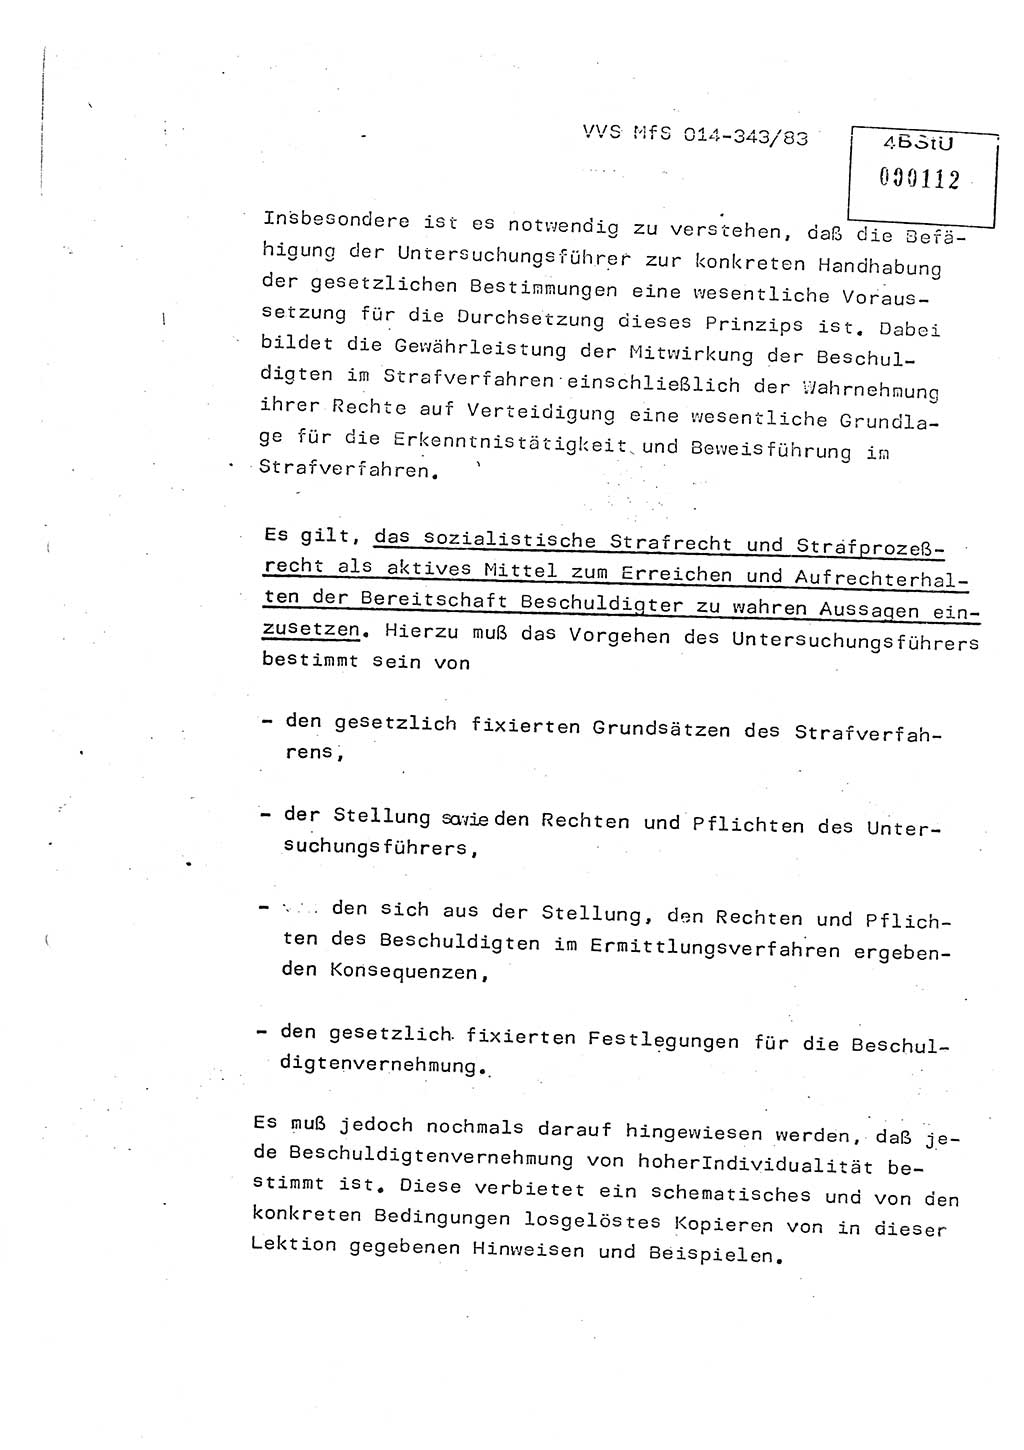 Lektion Ministerium für Staatssicherheit (MfS) [Deutsche Demokratische Republik (DDR)], Hauptabteilung (HA) Ⅸ, Vertrauliche Verschlußsache (VVS) o014-343/83, Berlin 1983, Seite 4 (Lekt. MfS DDR HA Ⅸ VVS o014-343/83 1983, S. 4)